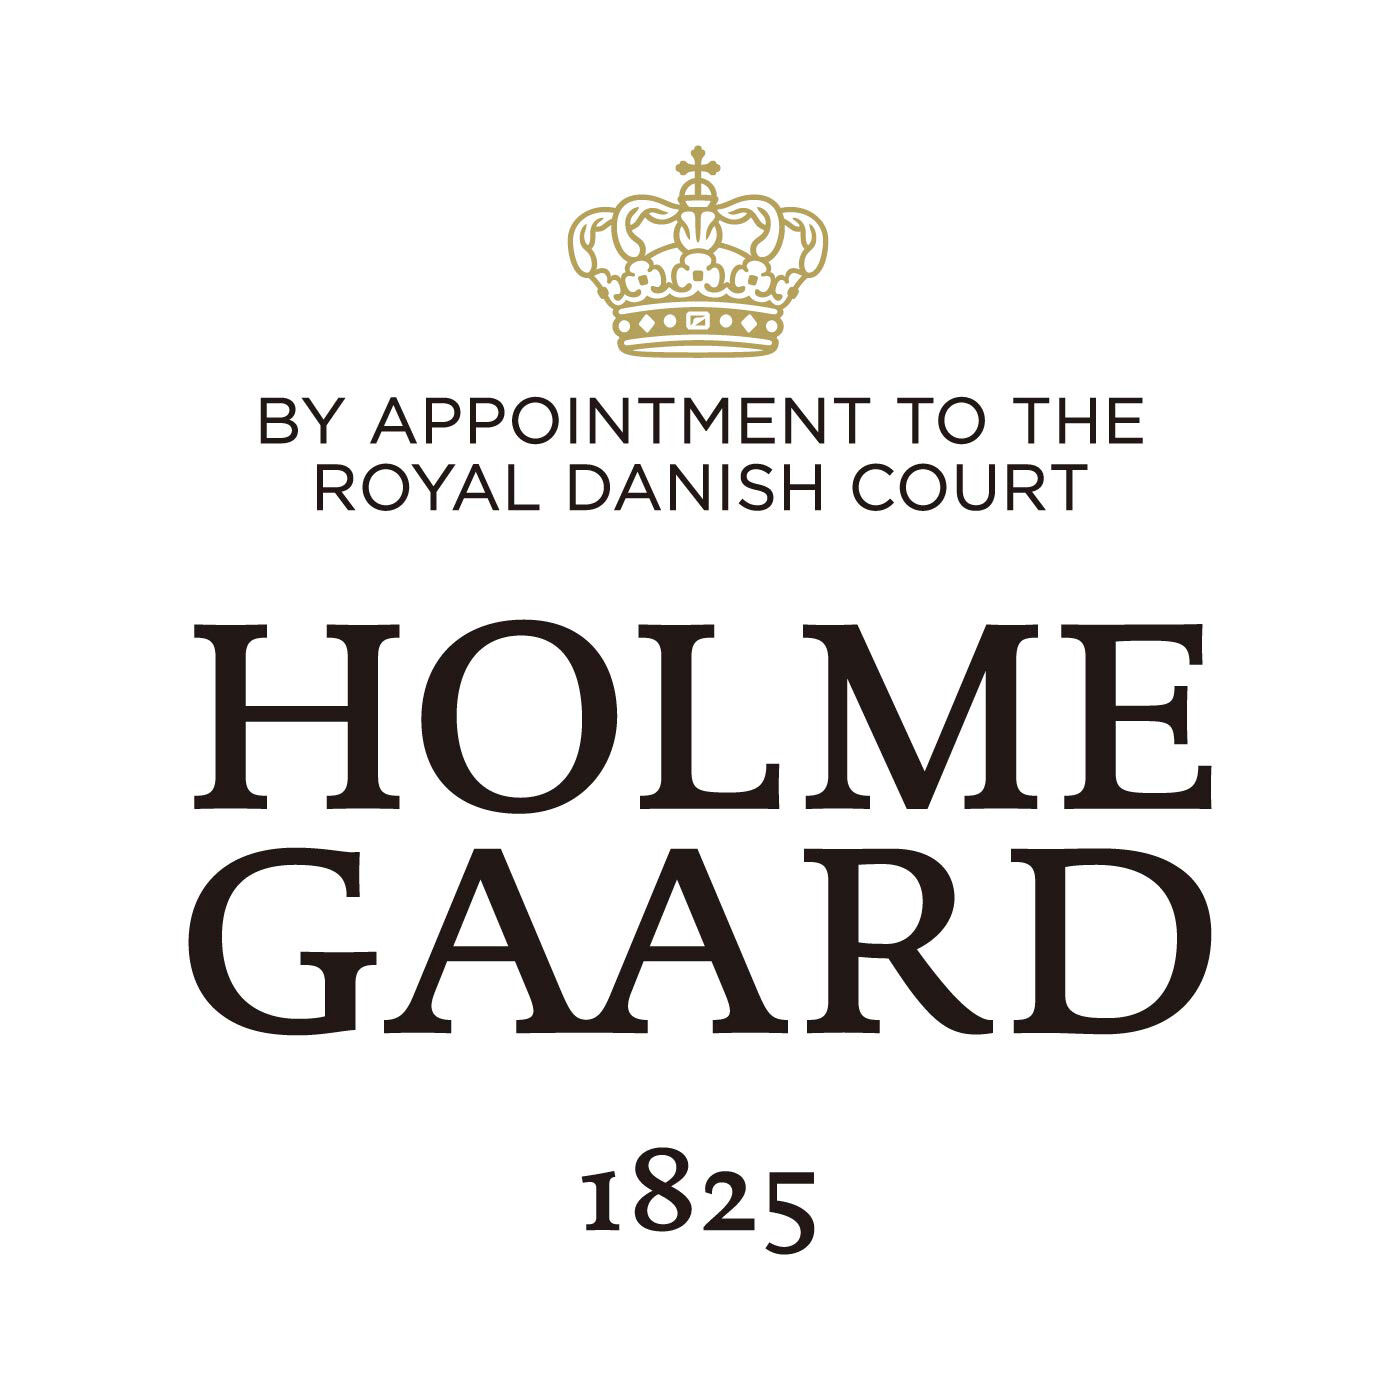 SeeMONO|ガラスのウェーブが美しい　一年中飾れるクリスマスツリー〈Ｍ〉／ホルムガード|HOLMEGAARD（ホルムガード）は、1825年にデンマークに生まれた伝統あるガラスブランドです。1900年代、多くの芸術家が手掛け始めるホルムガードの商品は、そのクオリティの高さからデンマーク王室 御用達ブランドに選ばれました。熟練の職人たちによる吹きガラス製法で生み出されるユニークなデ ザインのガラス製品は世界中の美術館に所蔵されています。